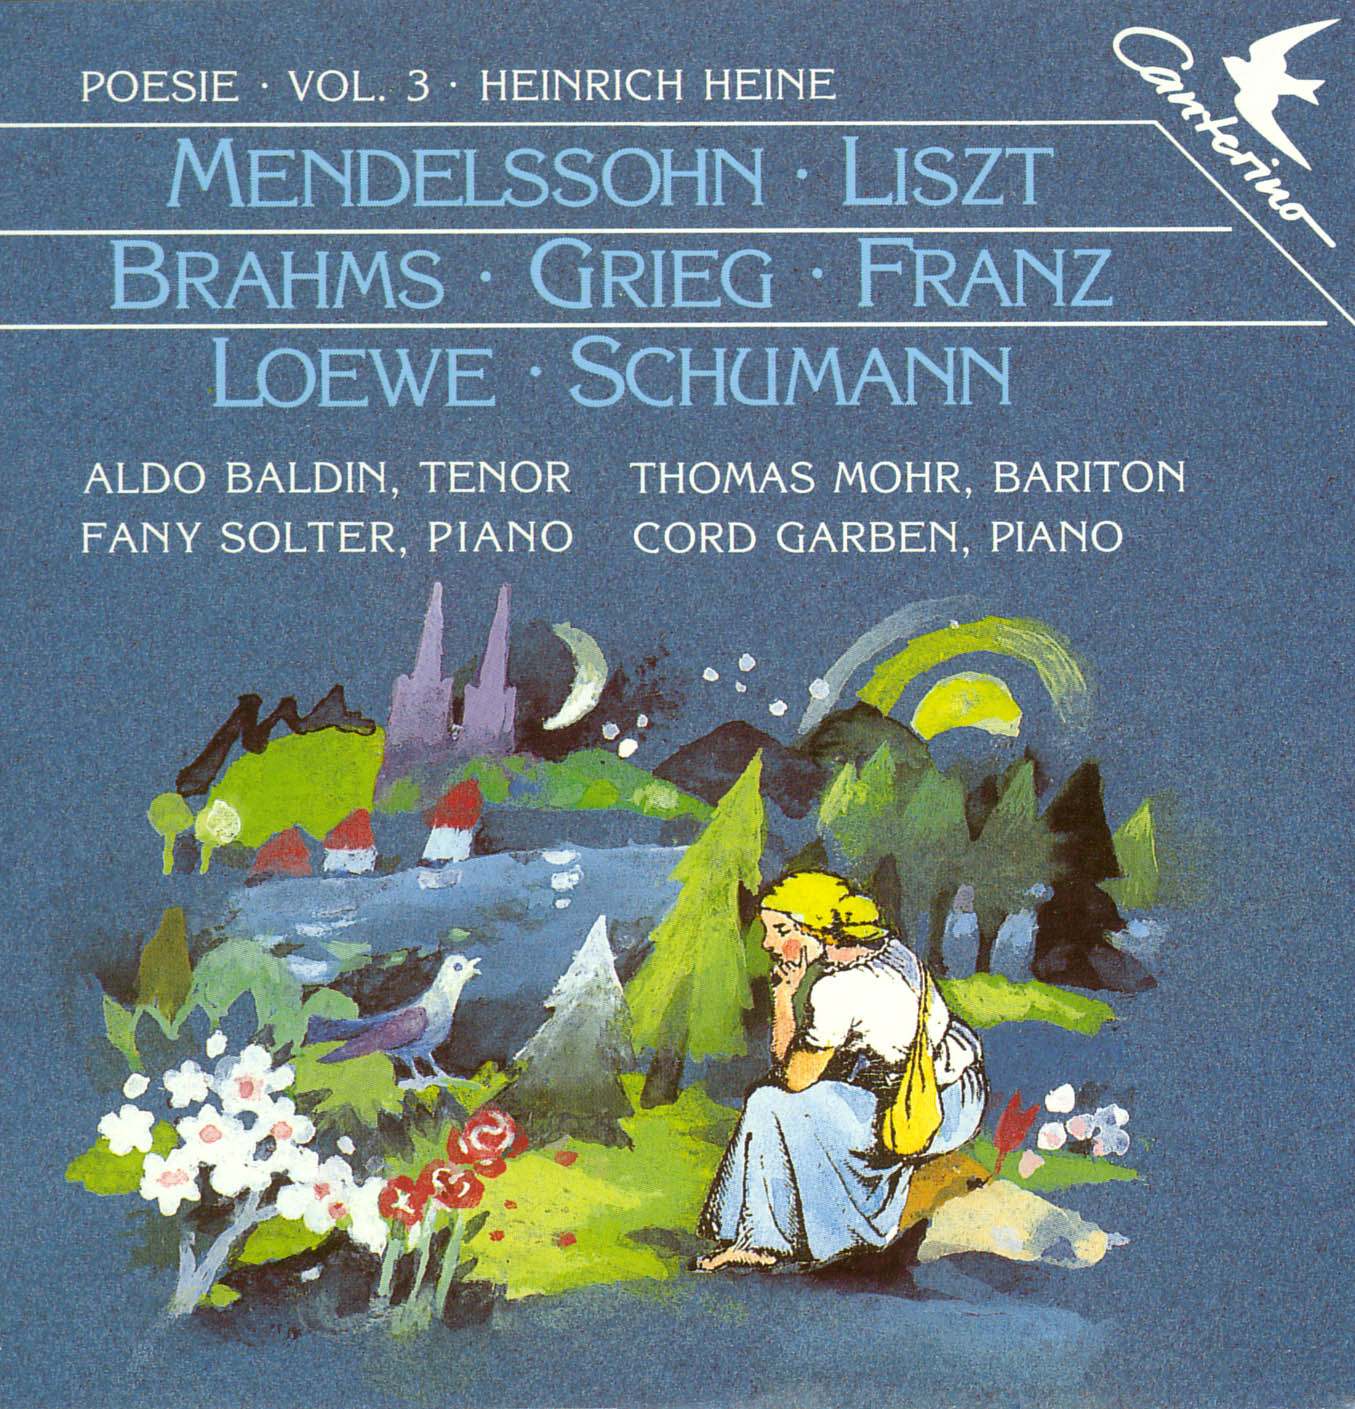 Poesie Vol. 3: Heinrich Heine